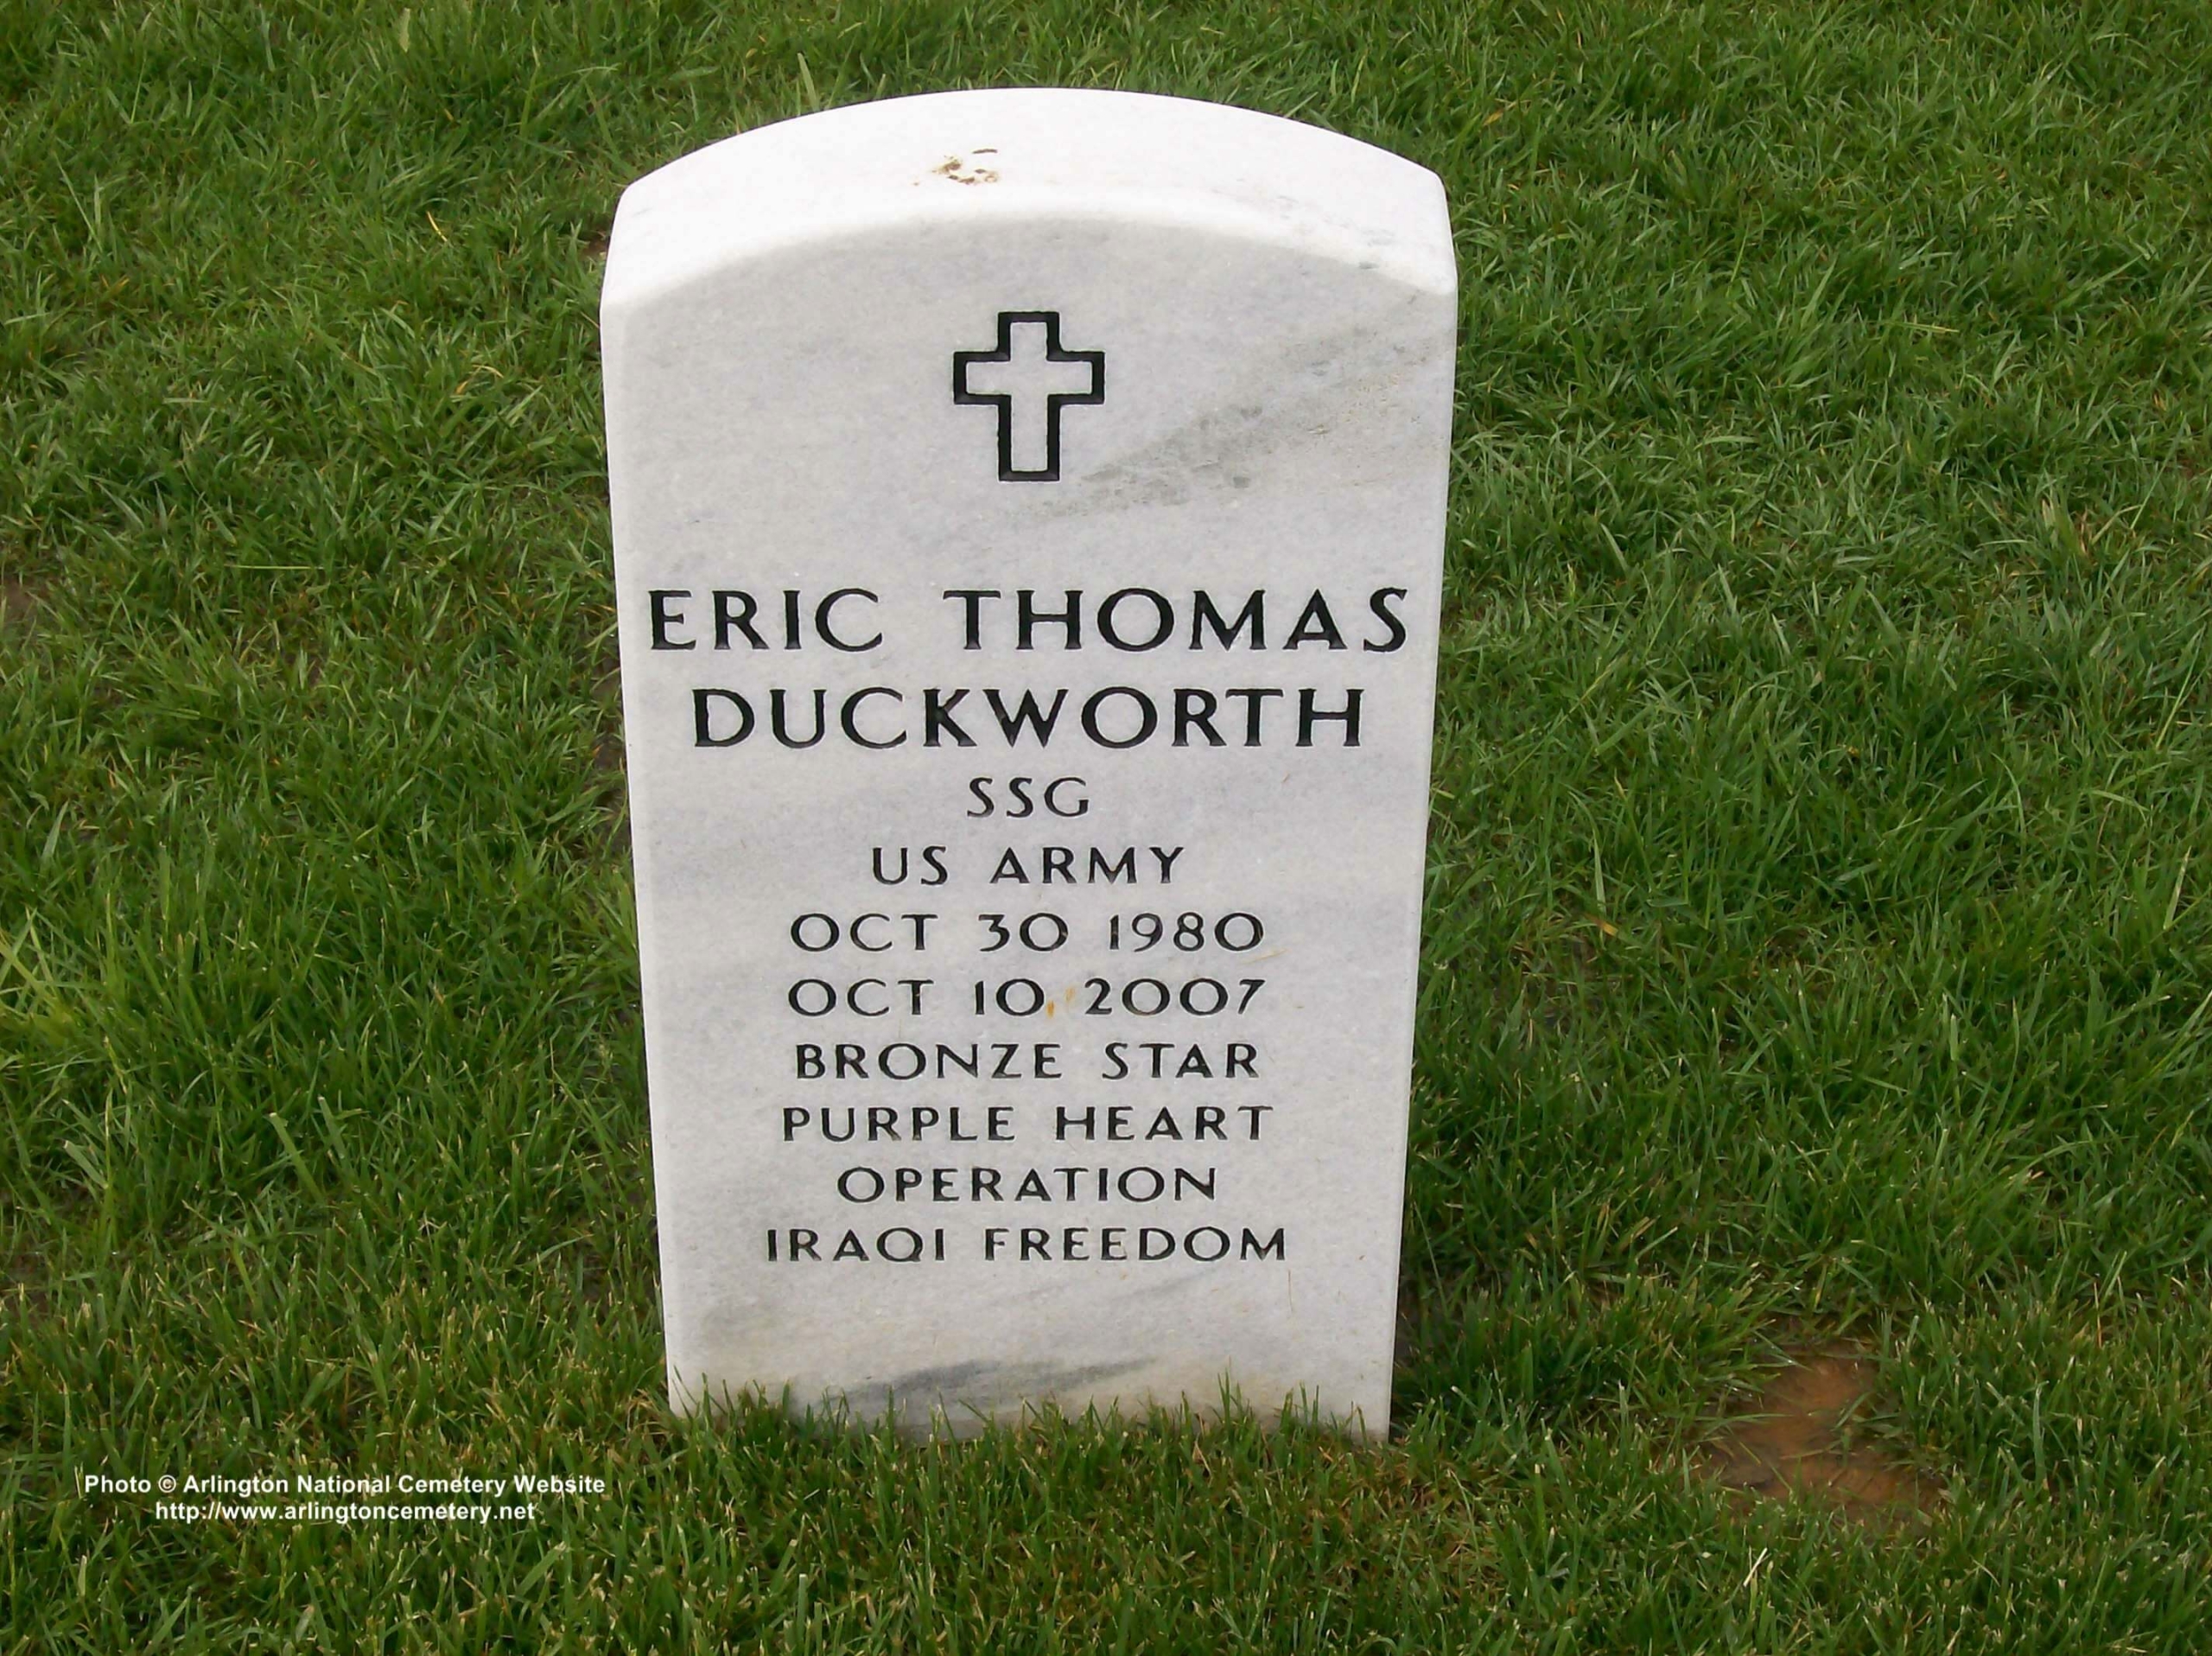 etduckworth-gravesite-photo-may-2008-001